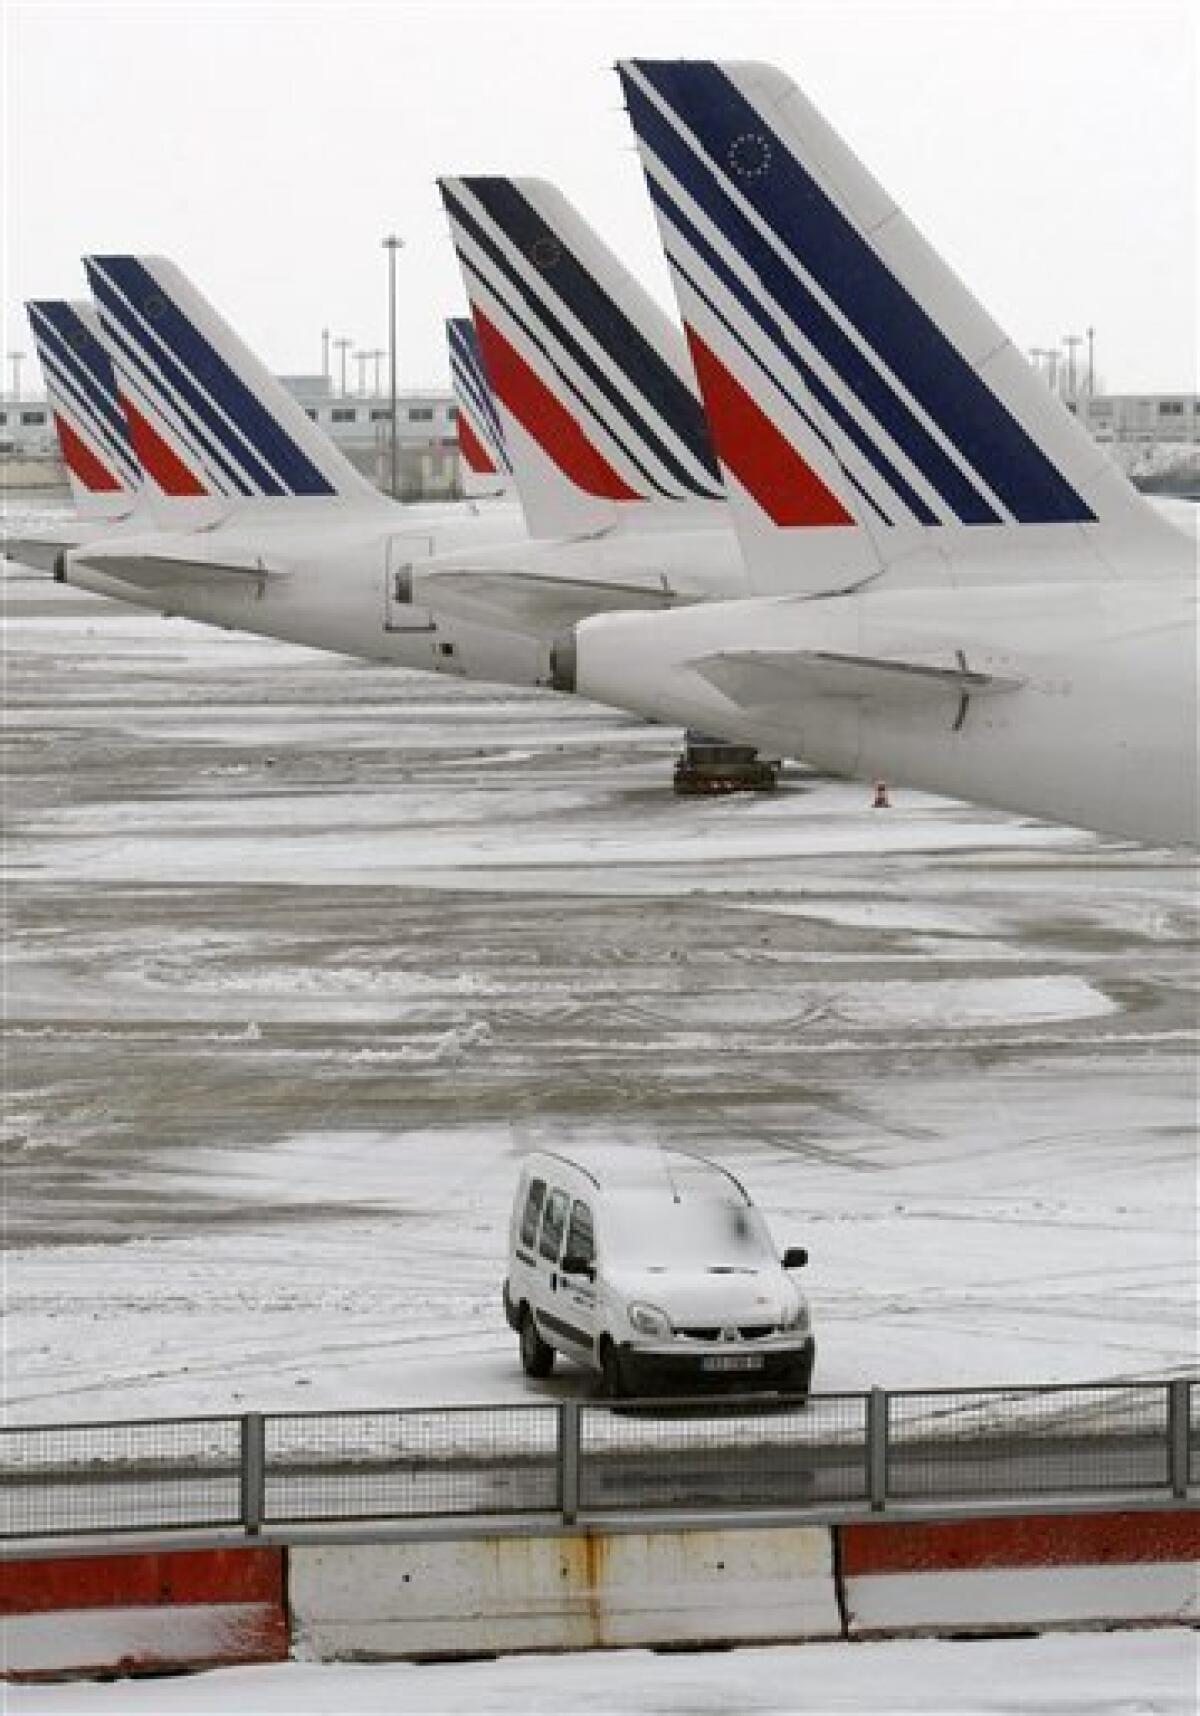 Paris' Charles de Gaulle 'rudest airport in Europe